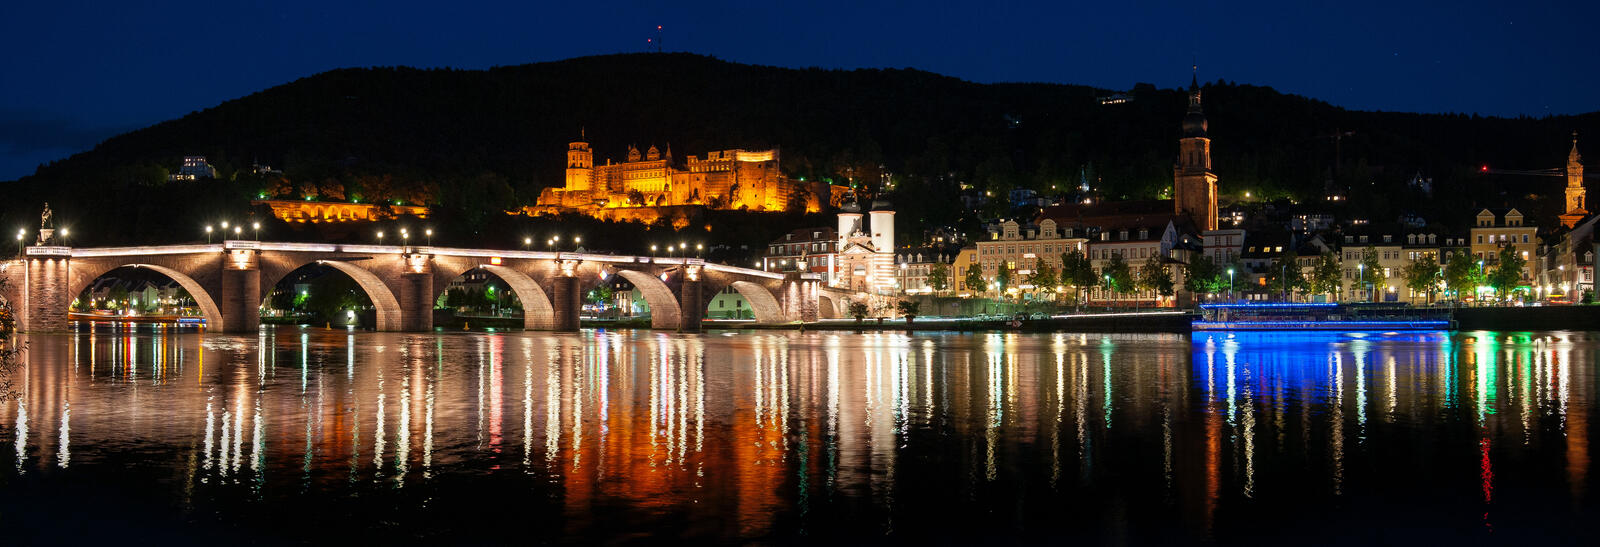 Обои Heidelberg at night Гейдельбергский замок Гейдельберг на рабочий стол